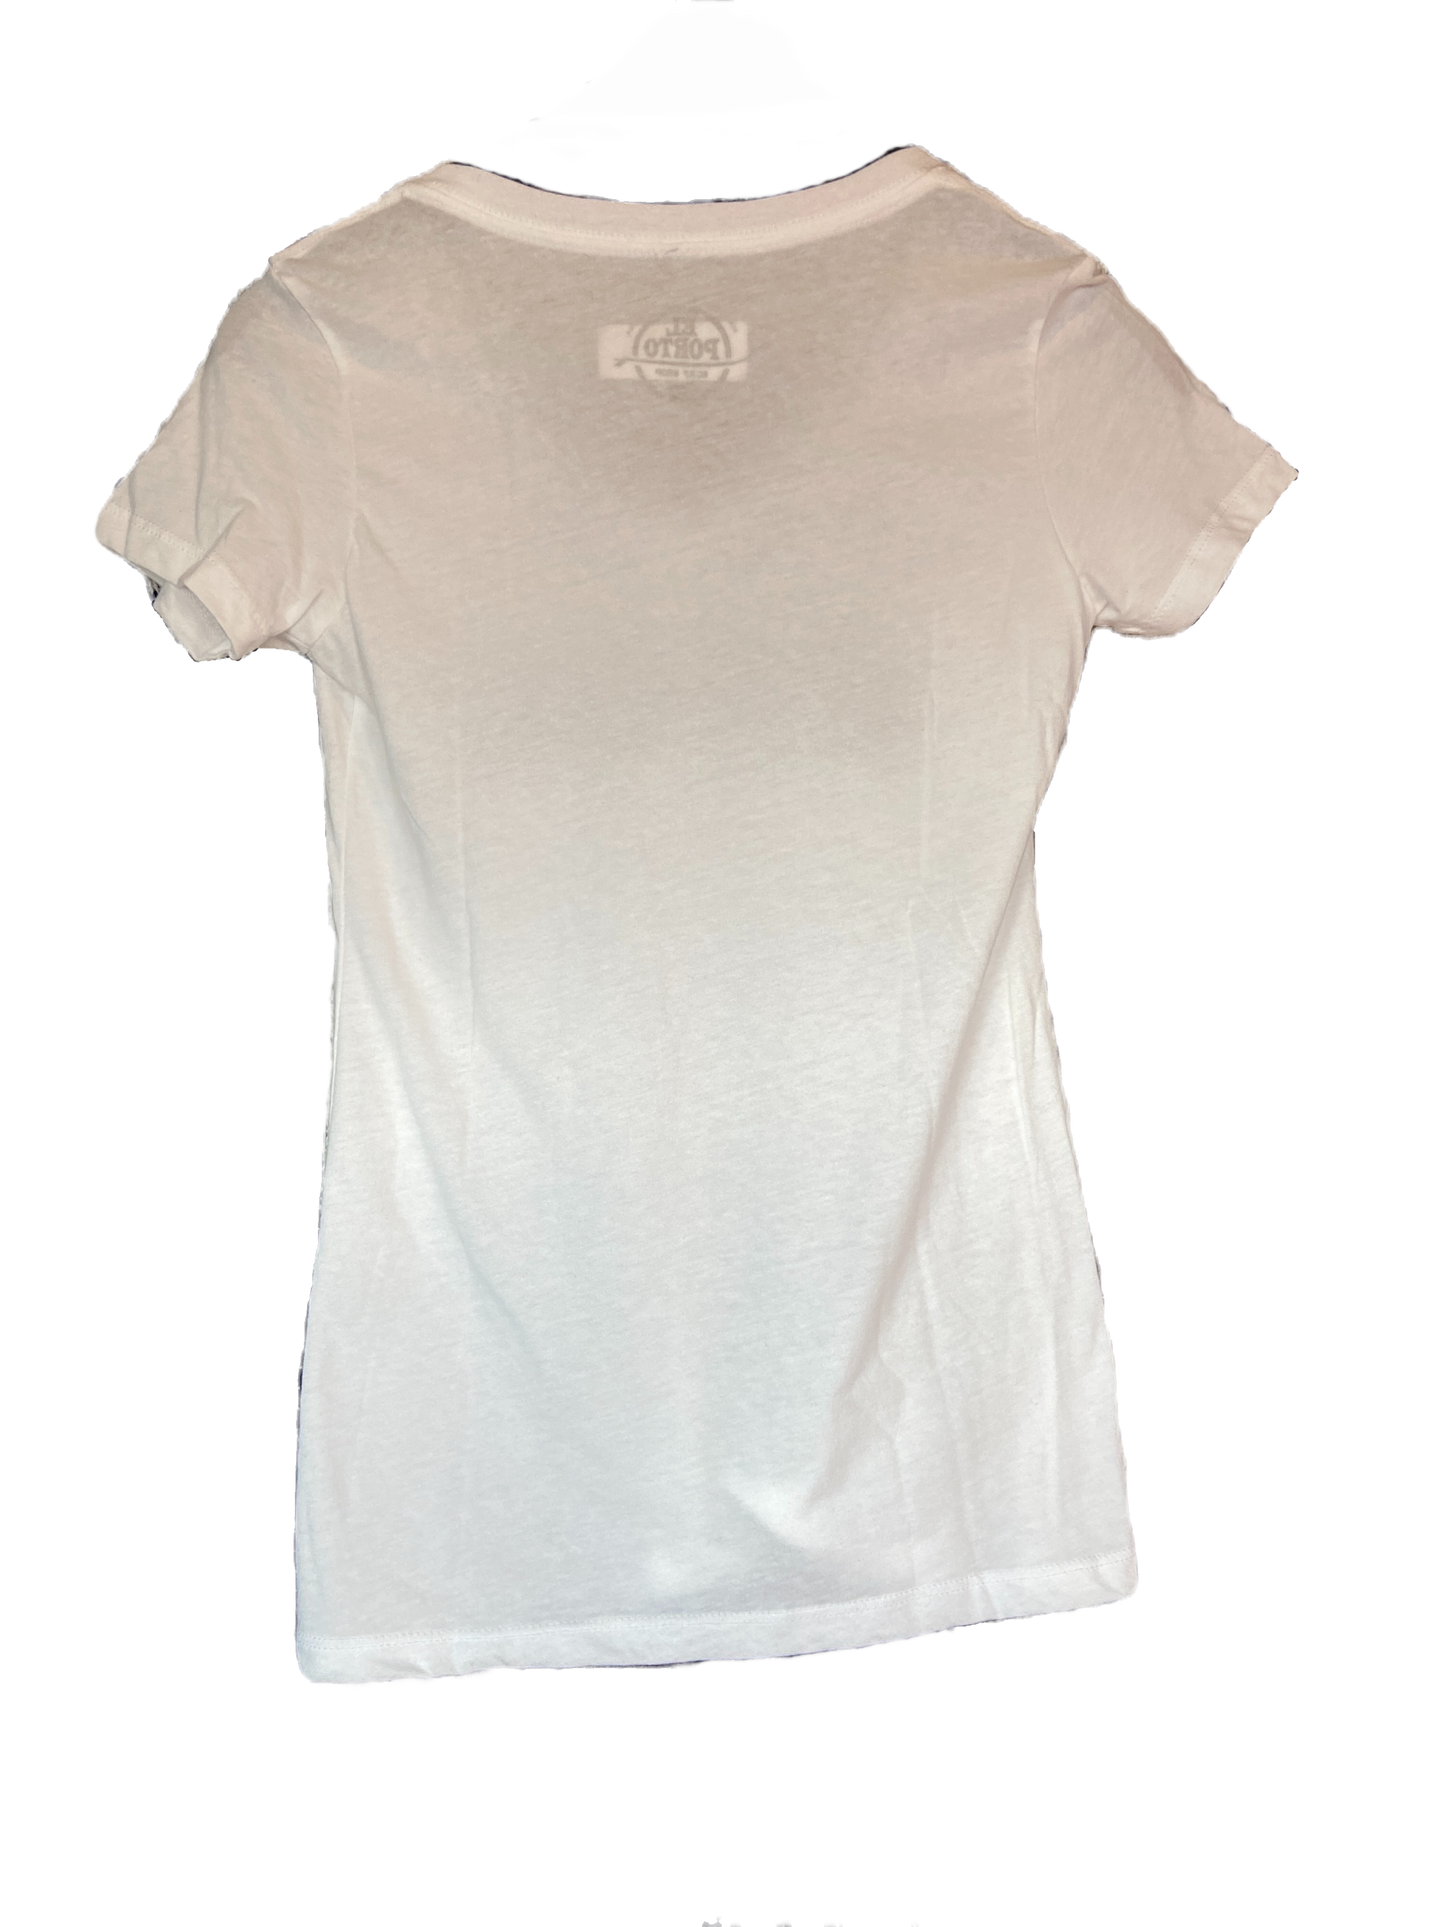 White El Porto Surf Shop circle logo t-shirt womens